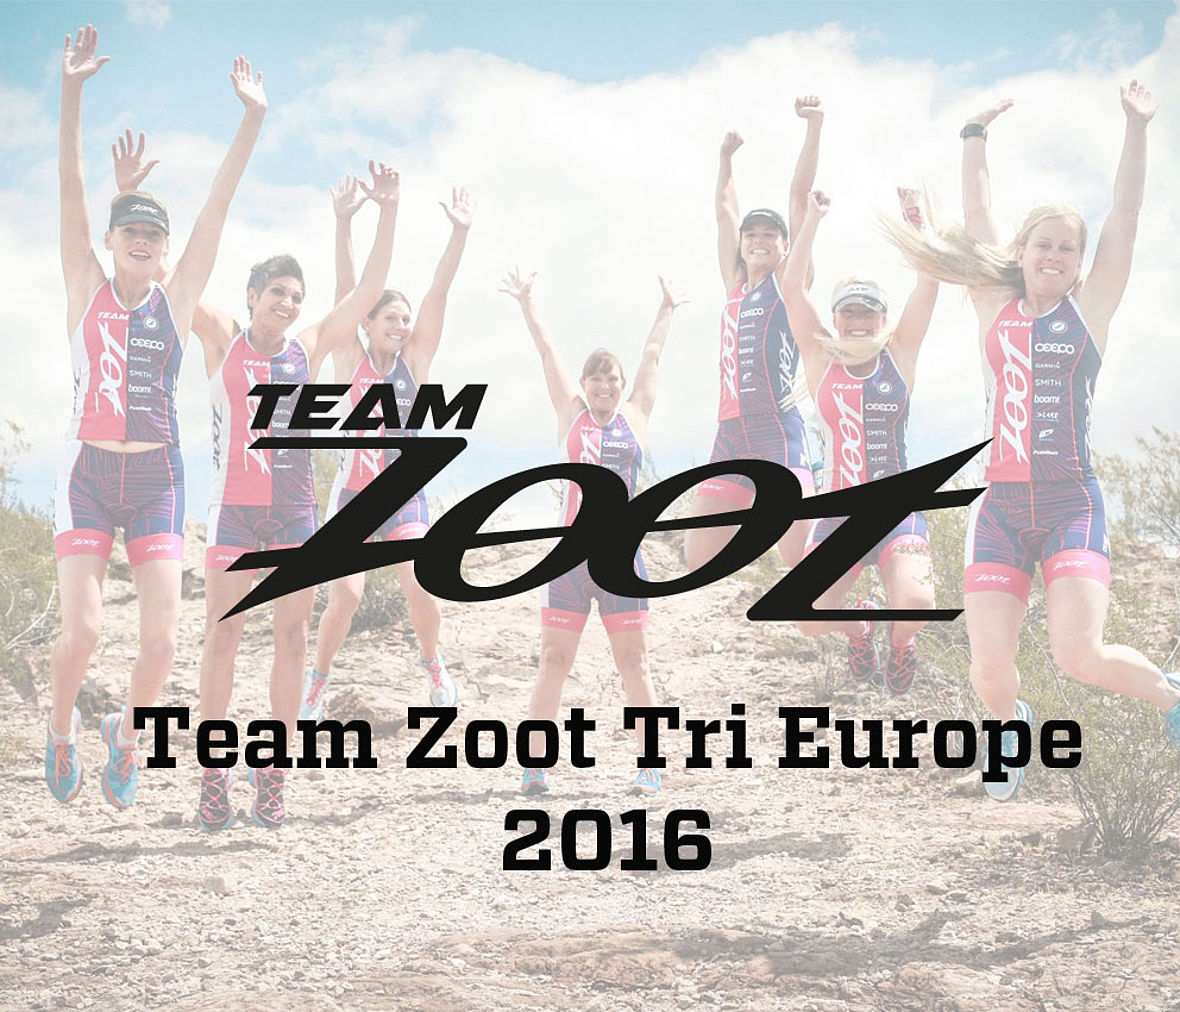 Mit 87 Hobbytriathleten geht das Team Zoot Tri Europa in der Saison 2016 an den Start